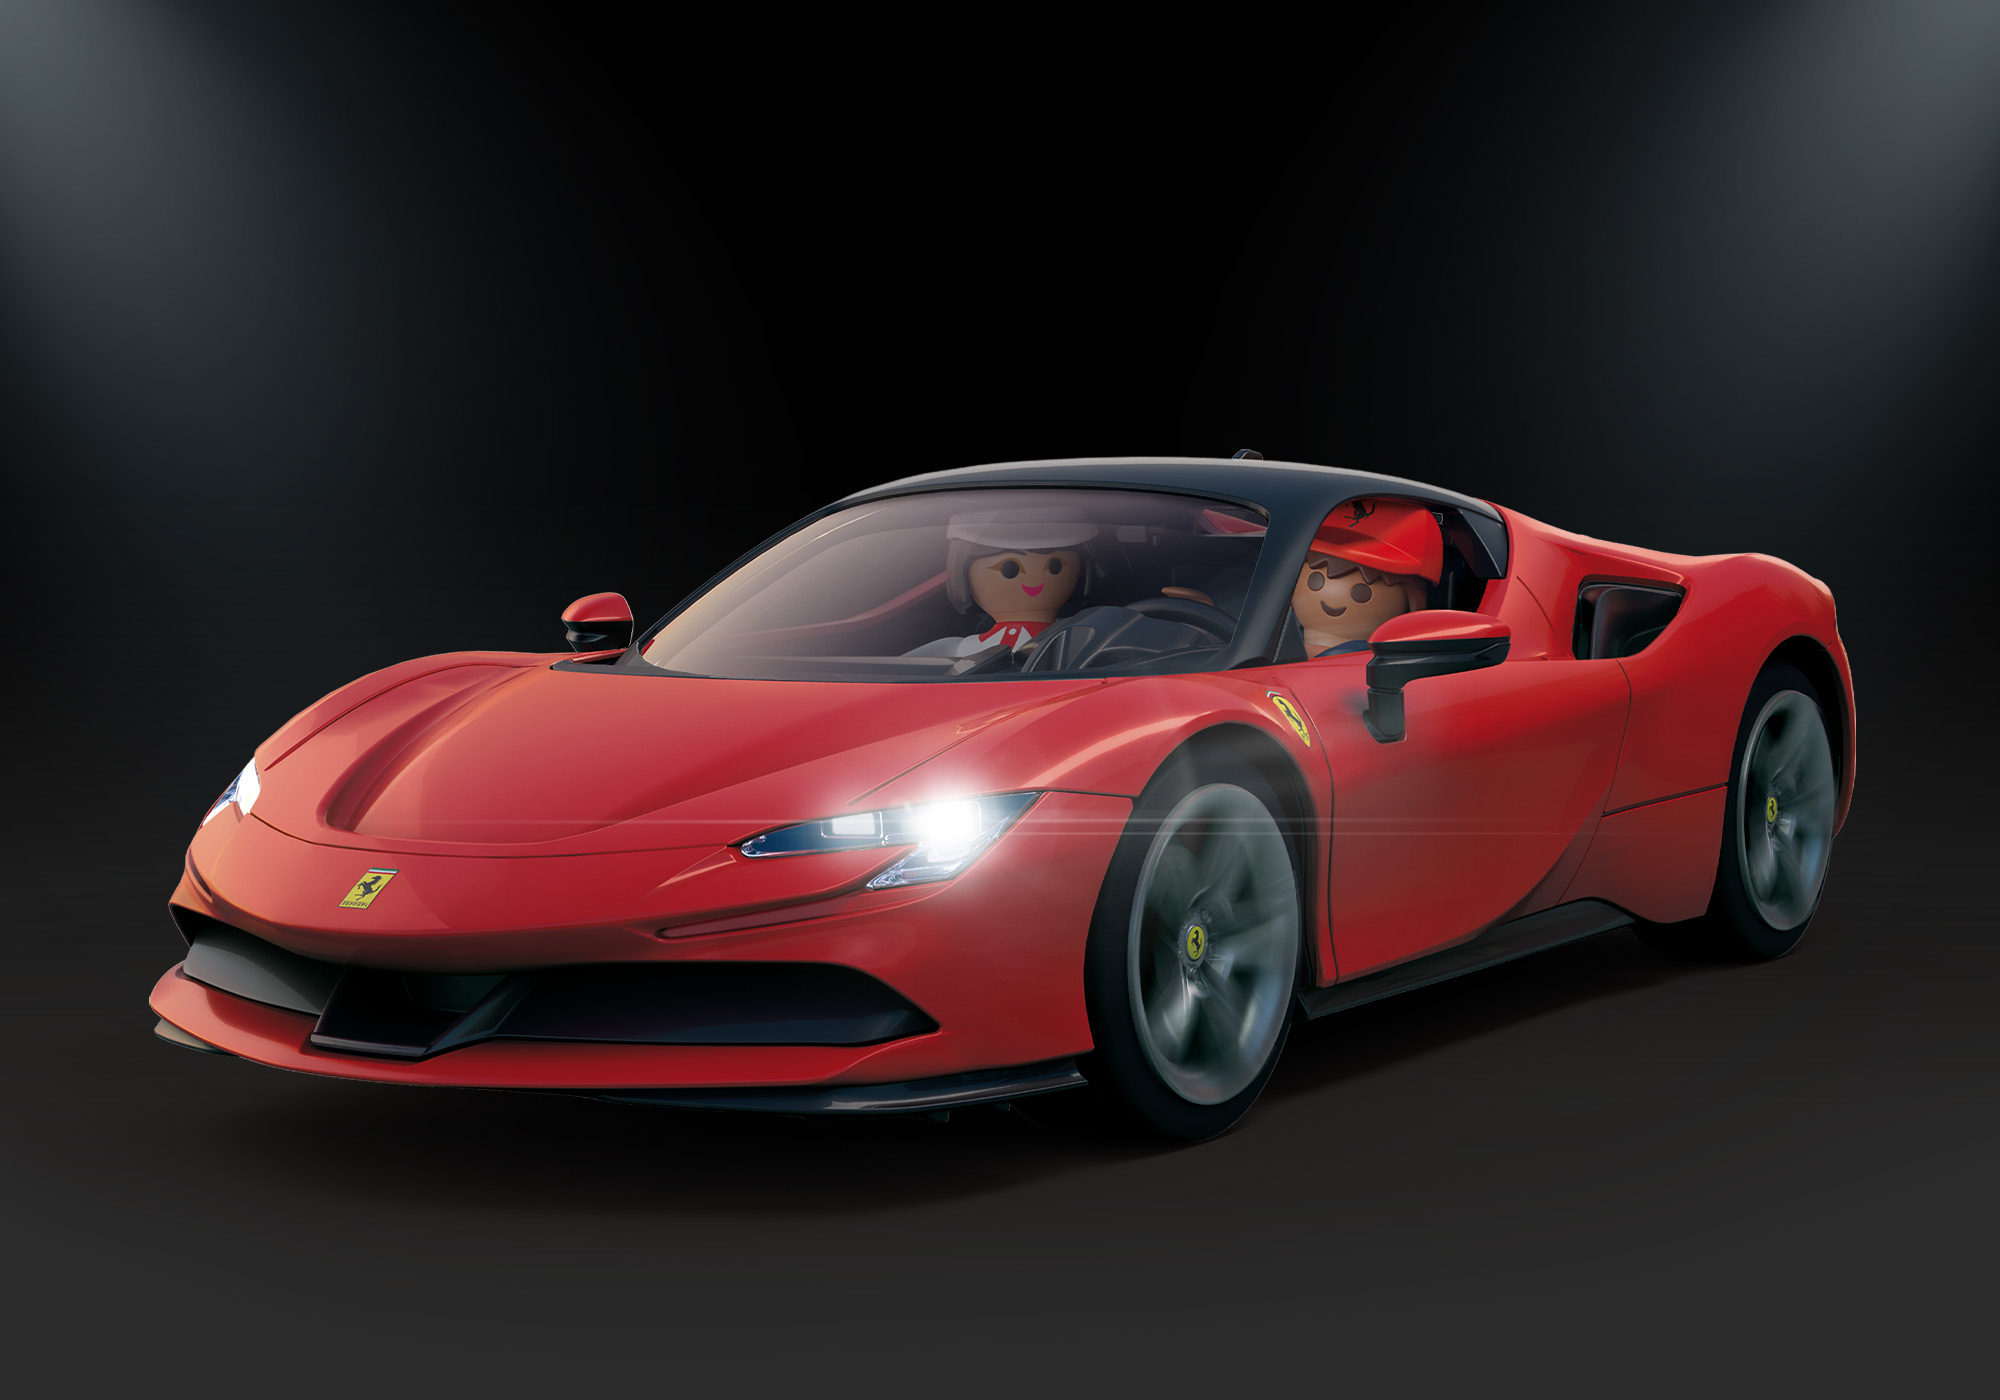 PLAYMOBIL 71020 Stradale Ferrari SF90 Spielset, Rot